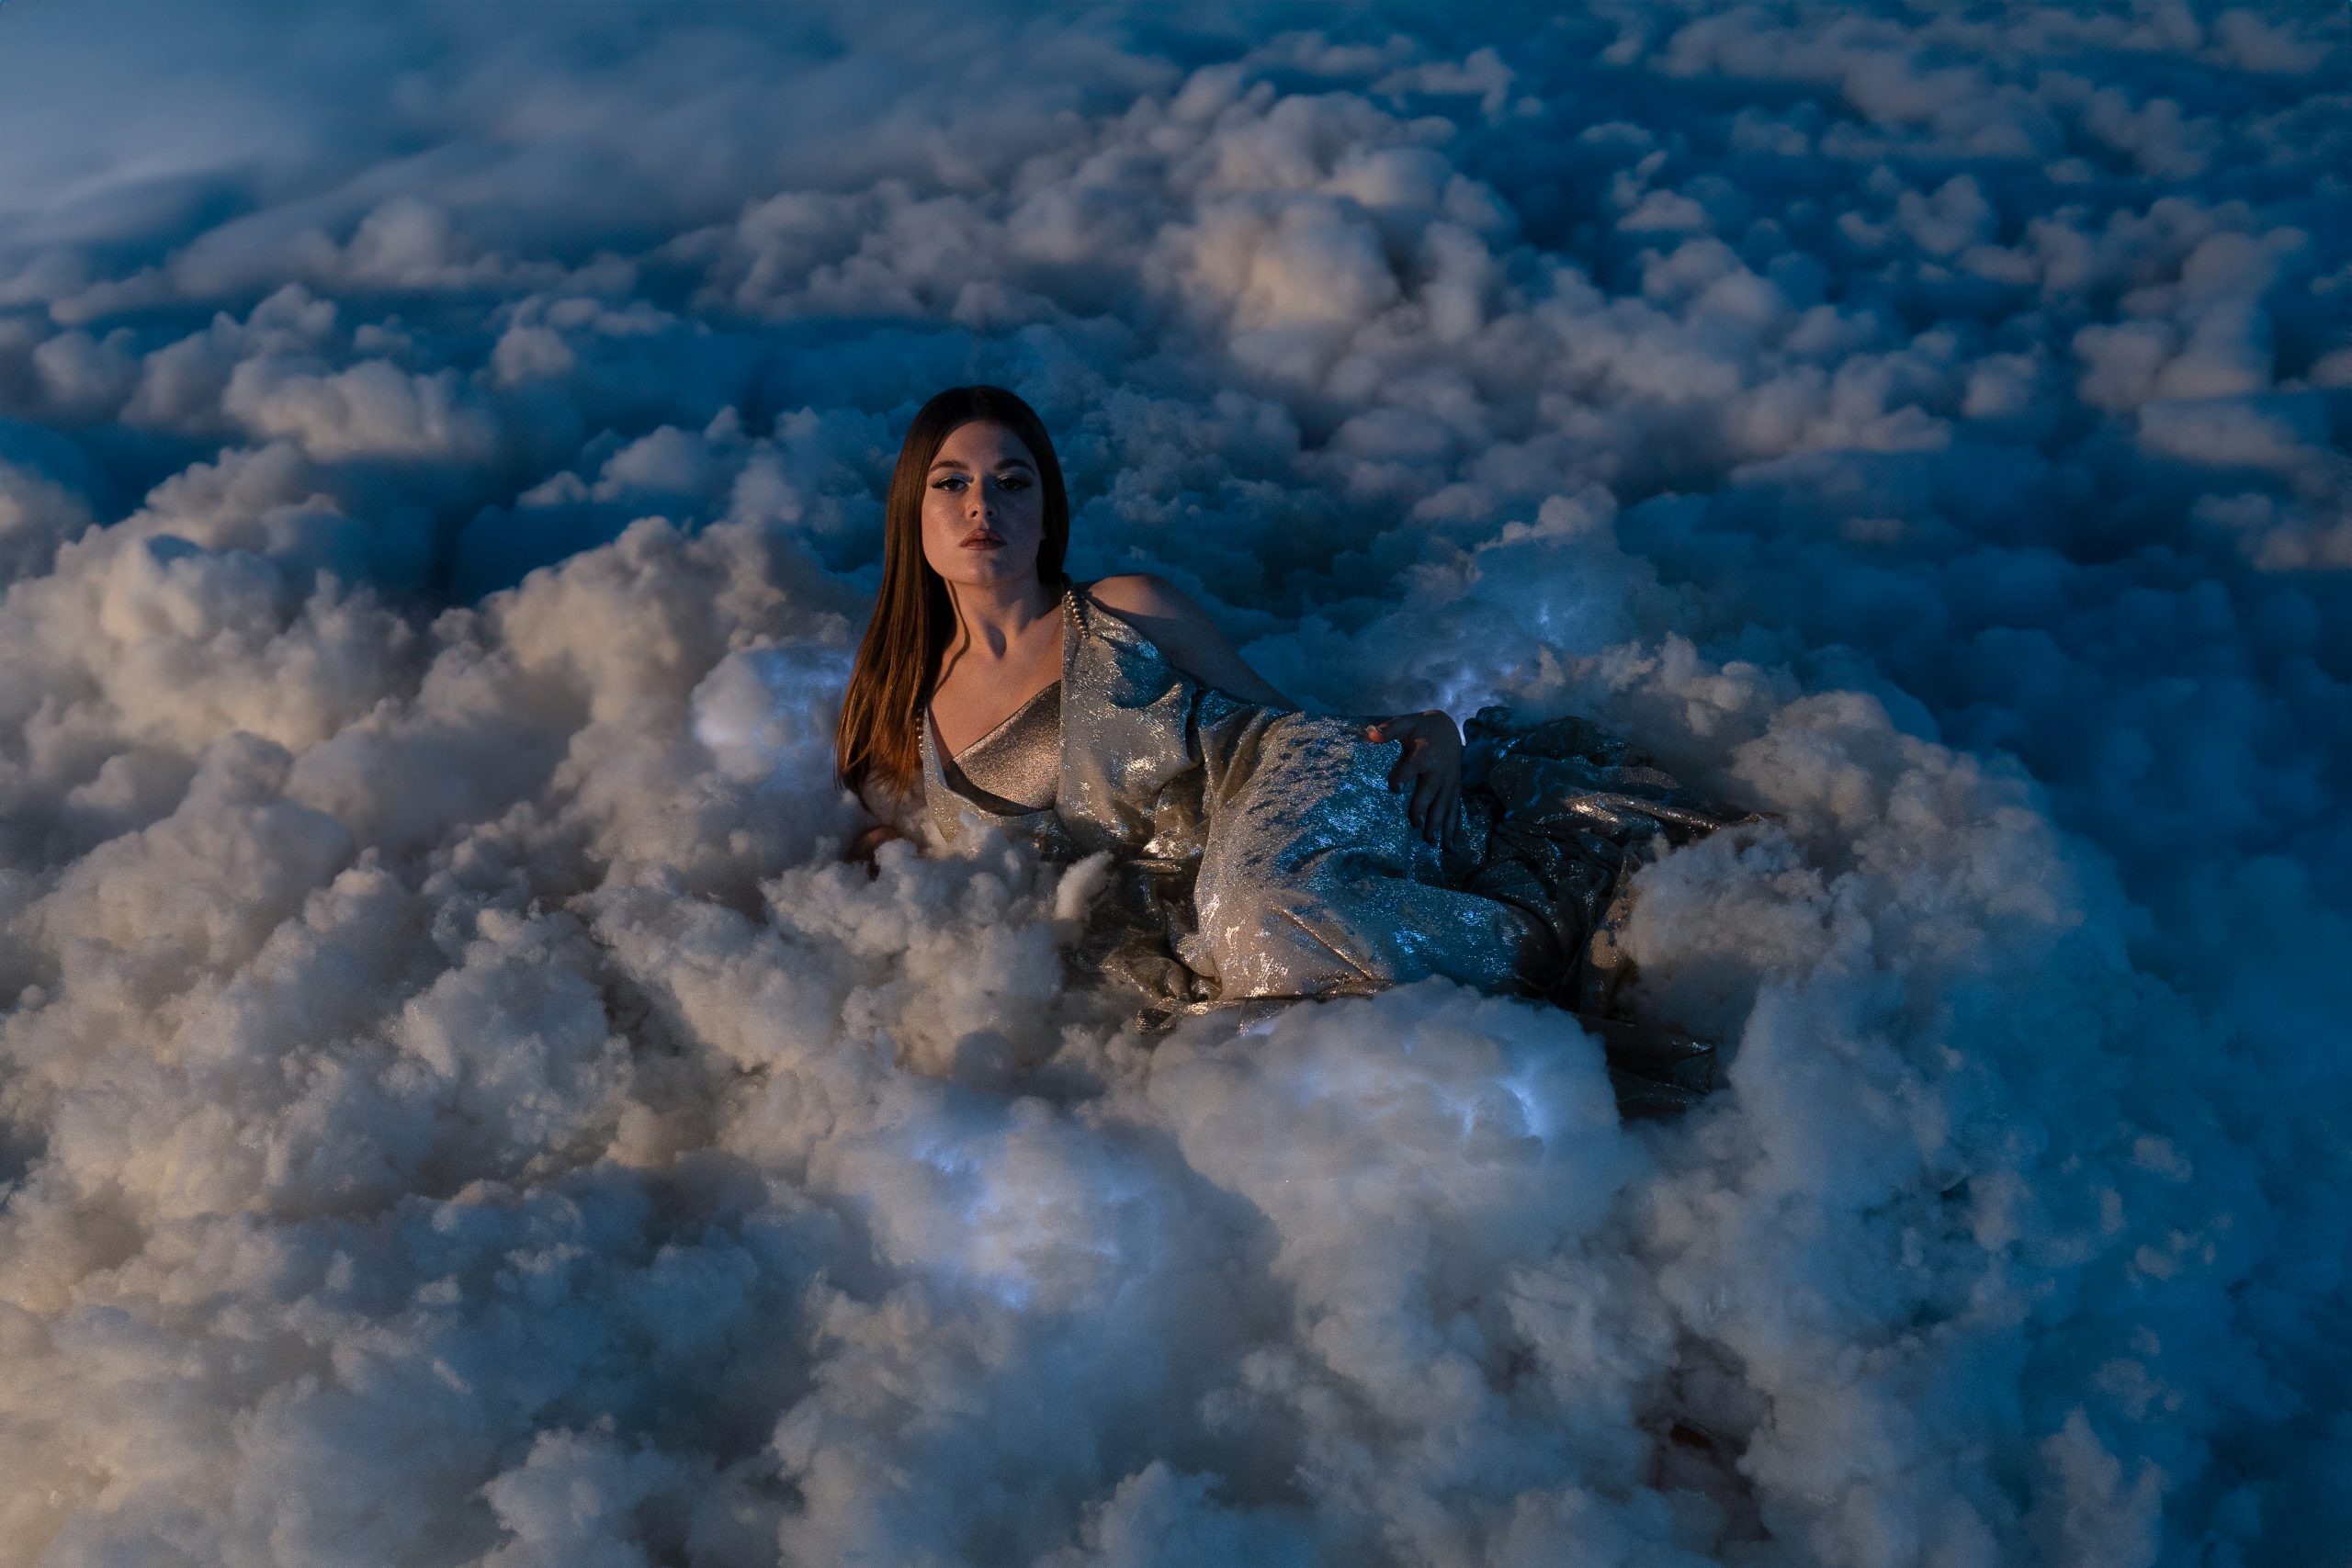 Novo otkriće na glazbenom nebu – Lu Dedić na Dori s pjesmom “Plavi leptir”